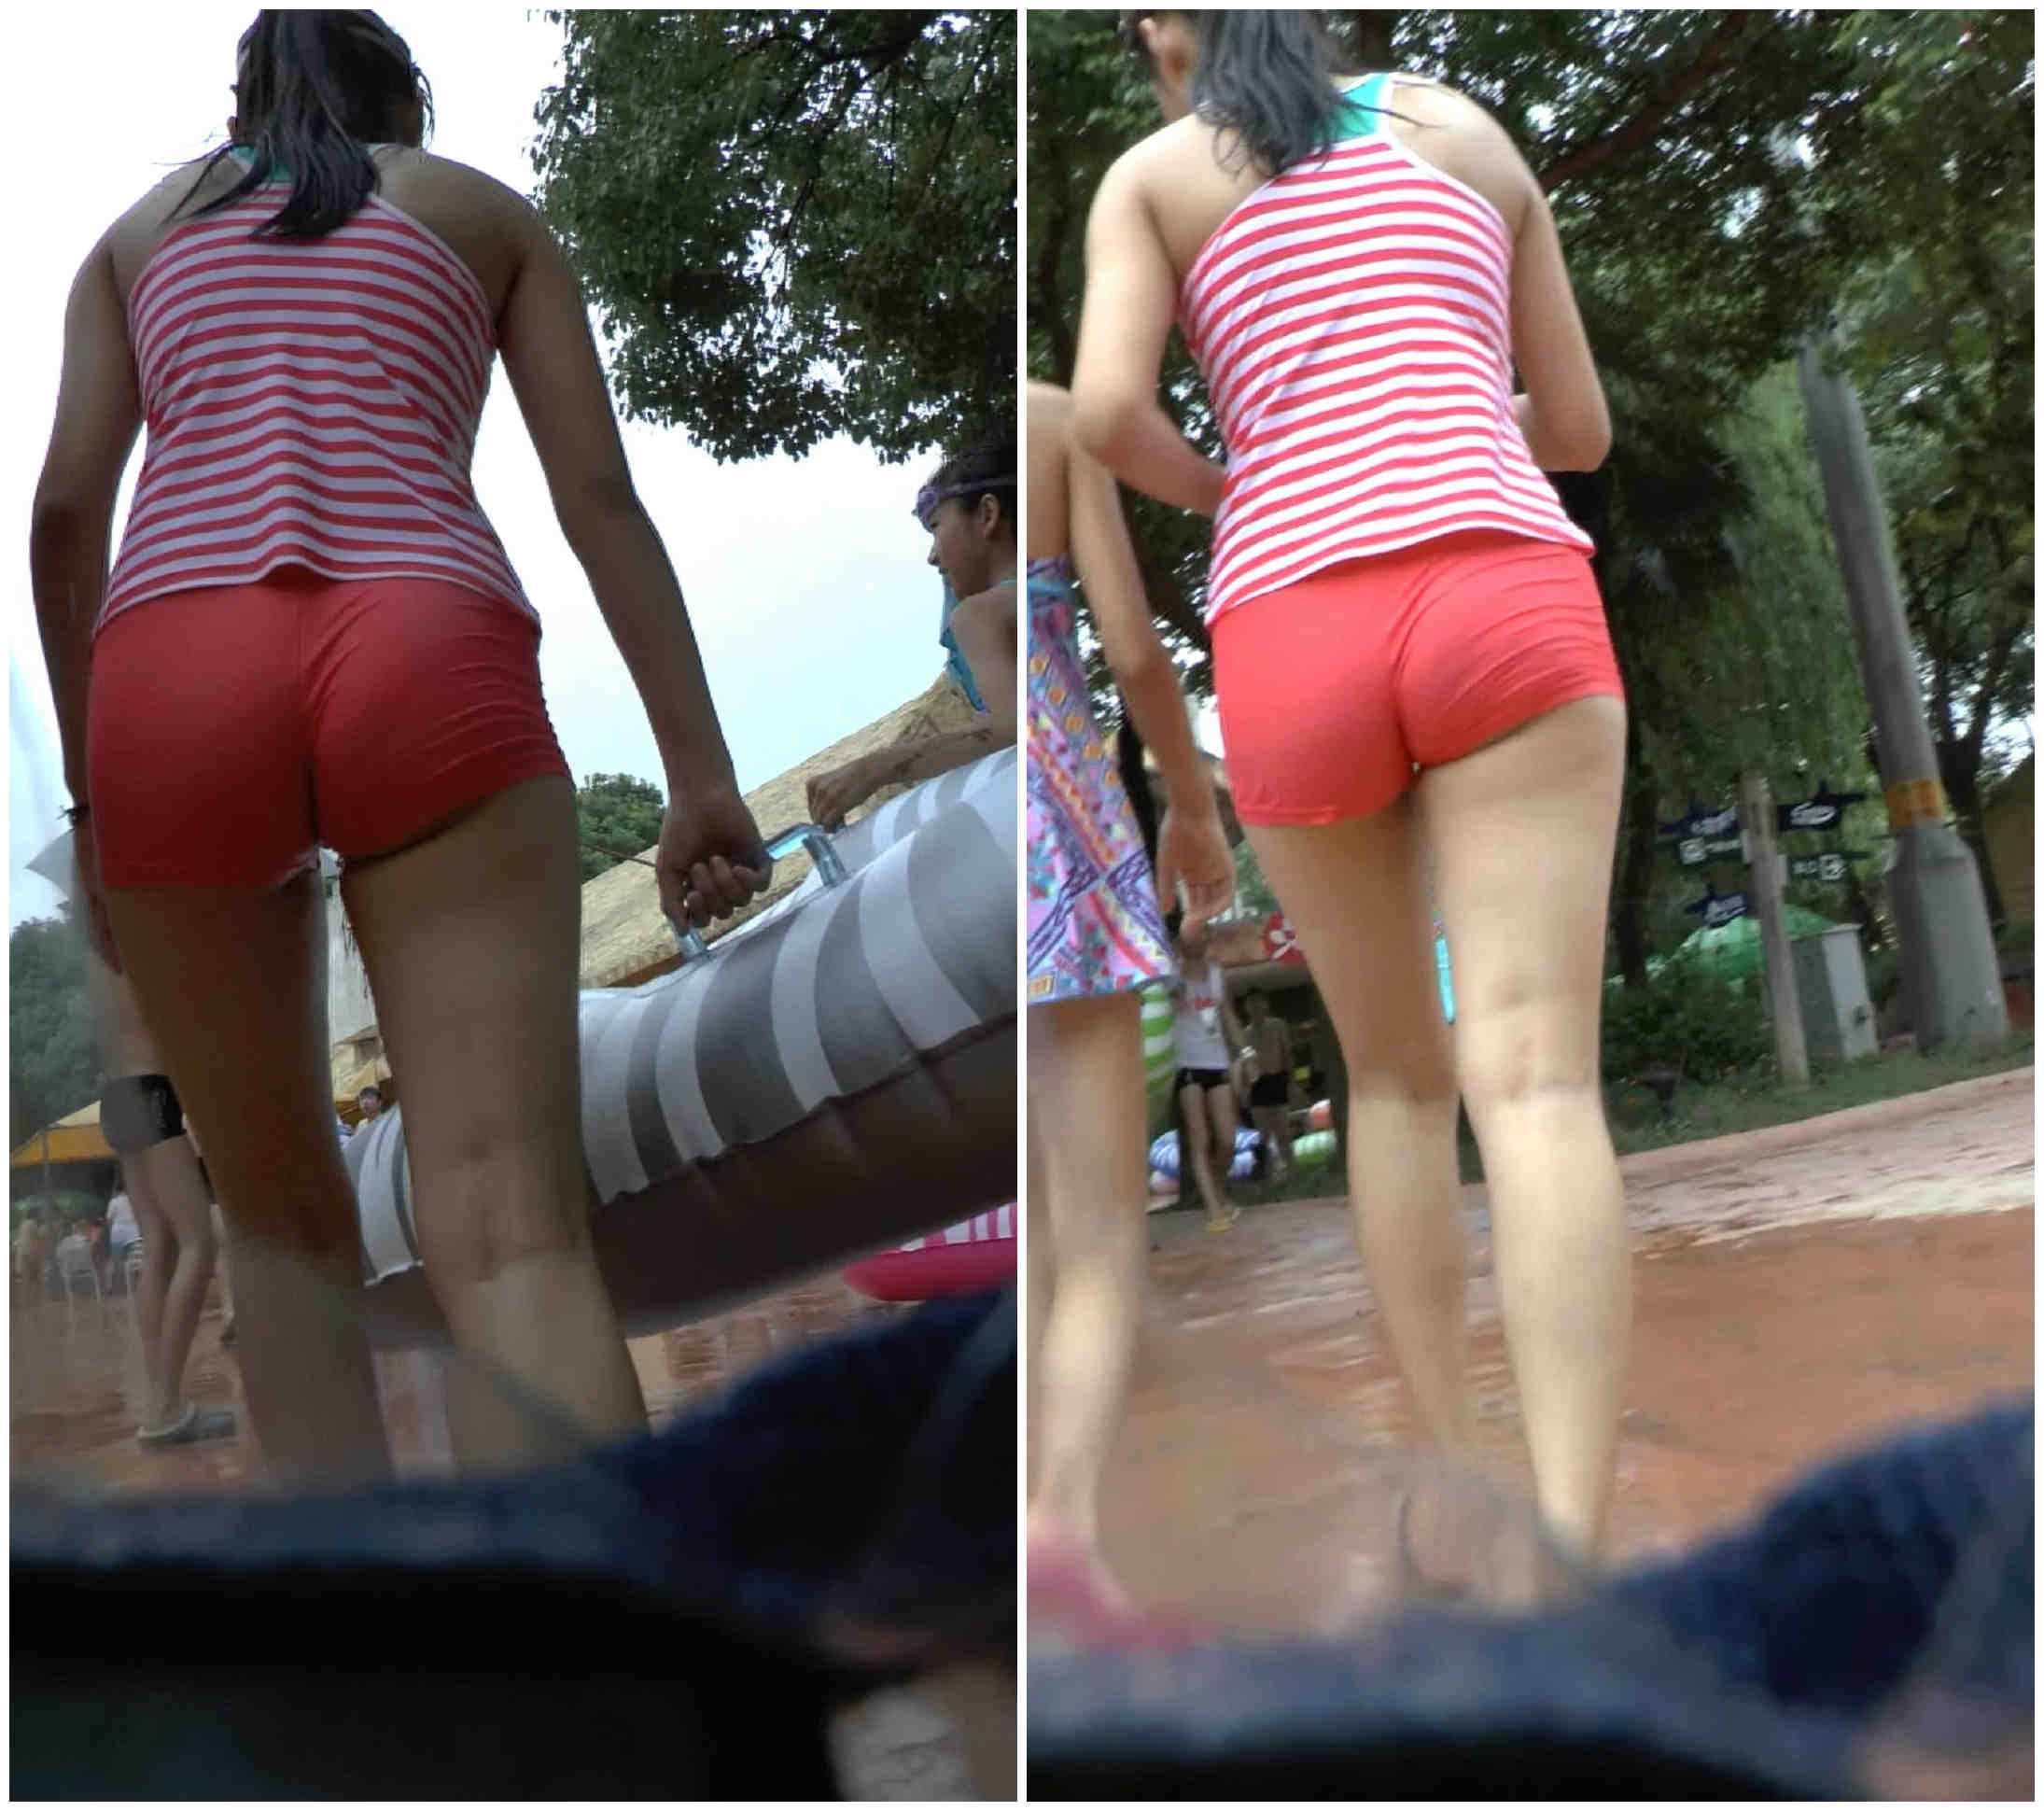 水上乐园的红裤条纹衫的美少女